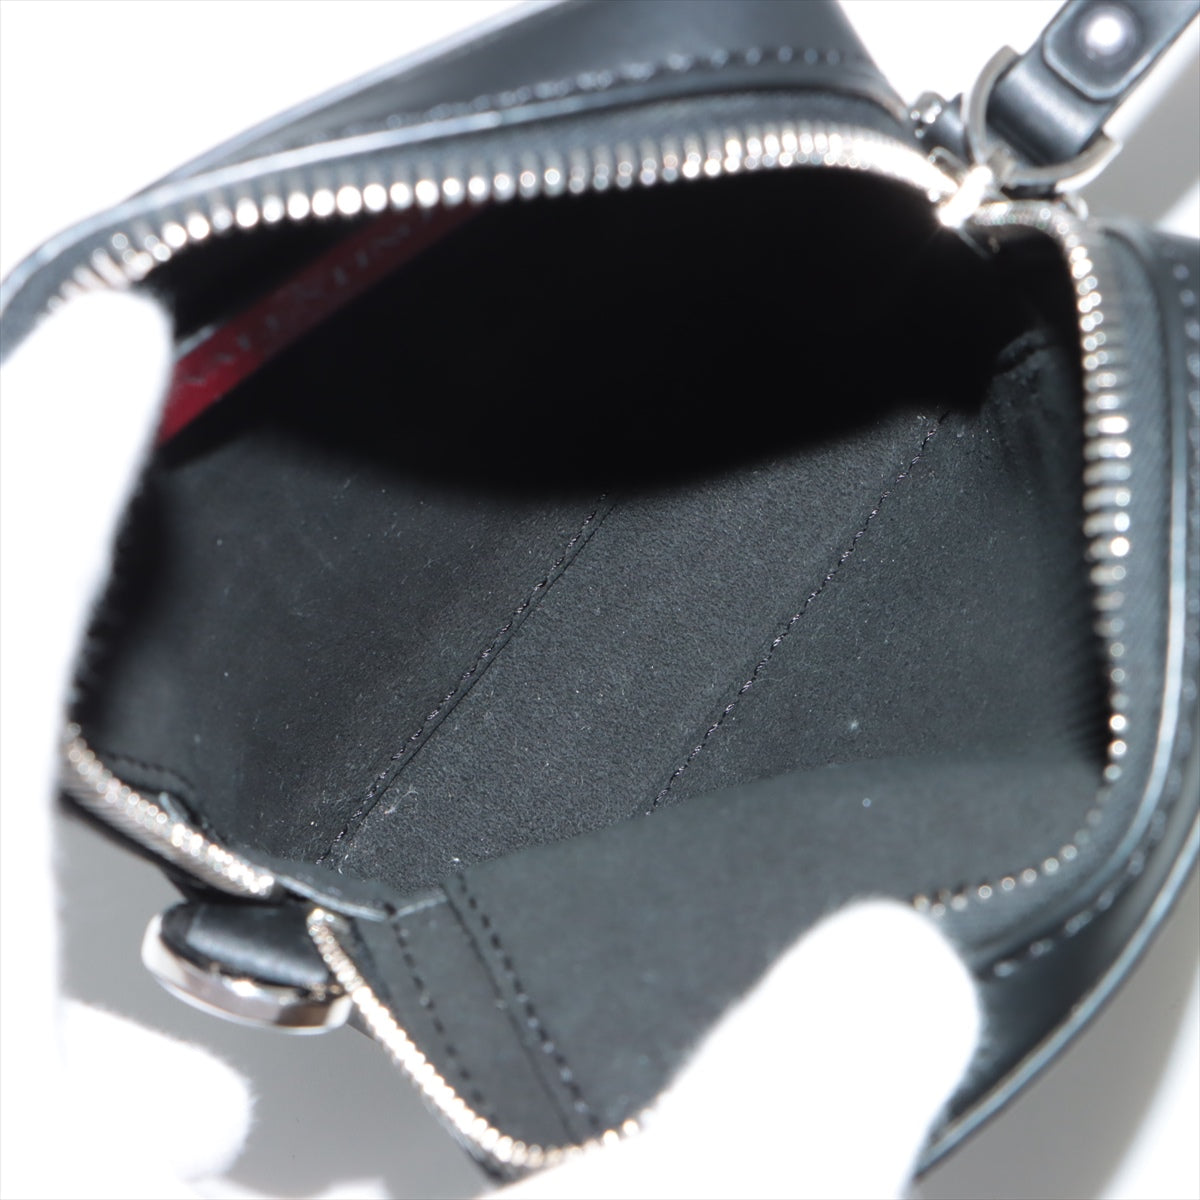 Valentino VLTN Leather Shoulder Bag Black